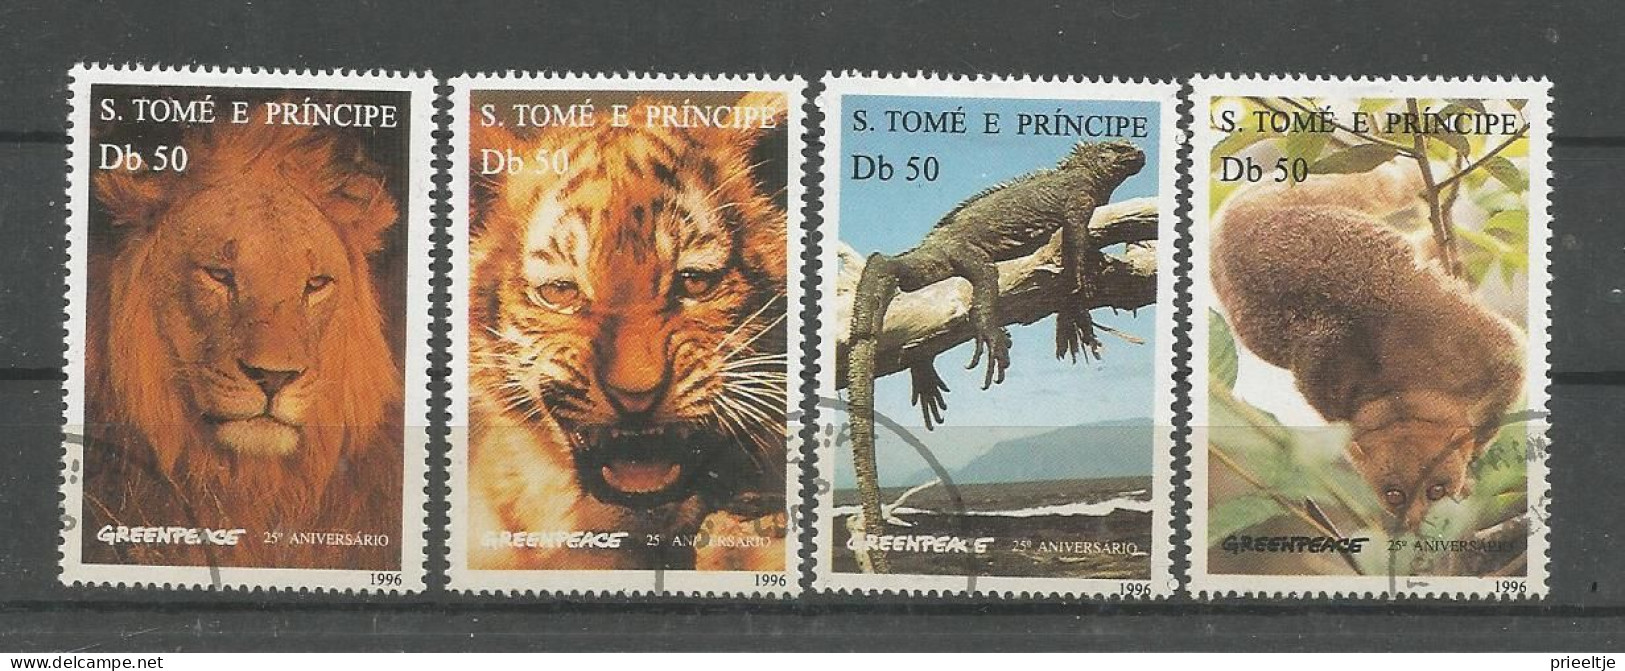 St Tome E Principe 1996 Greenpeace 25th Anniv. Y.T. 1264CQ/CT (0) - Sao Tome Et Principe